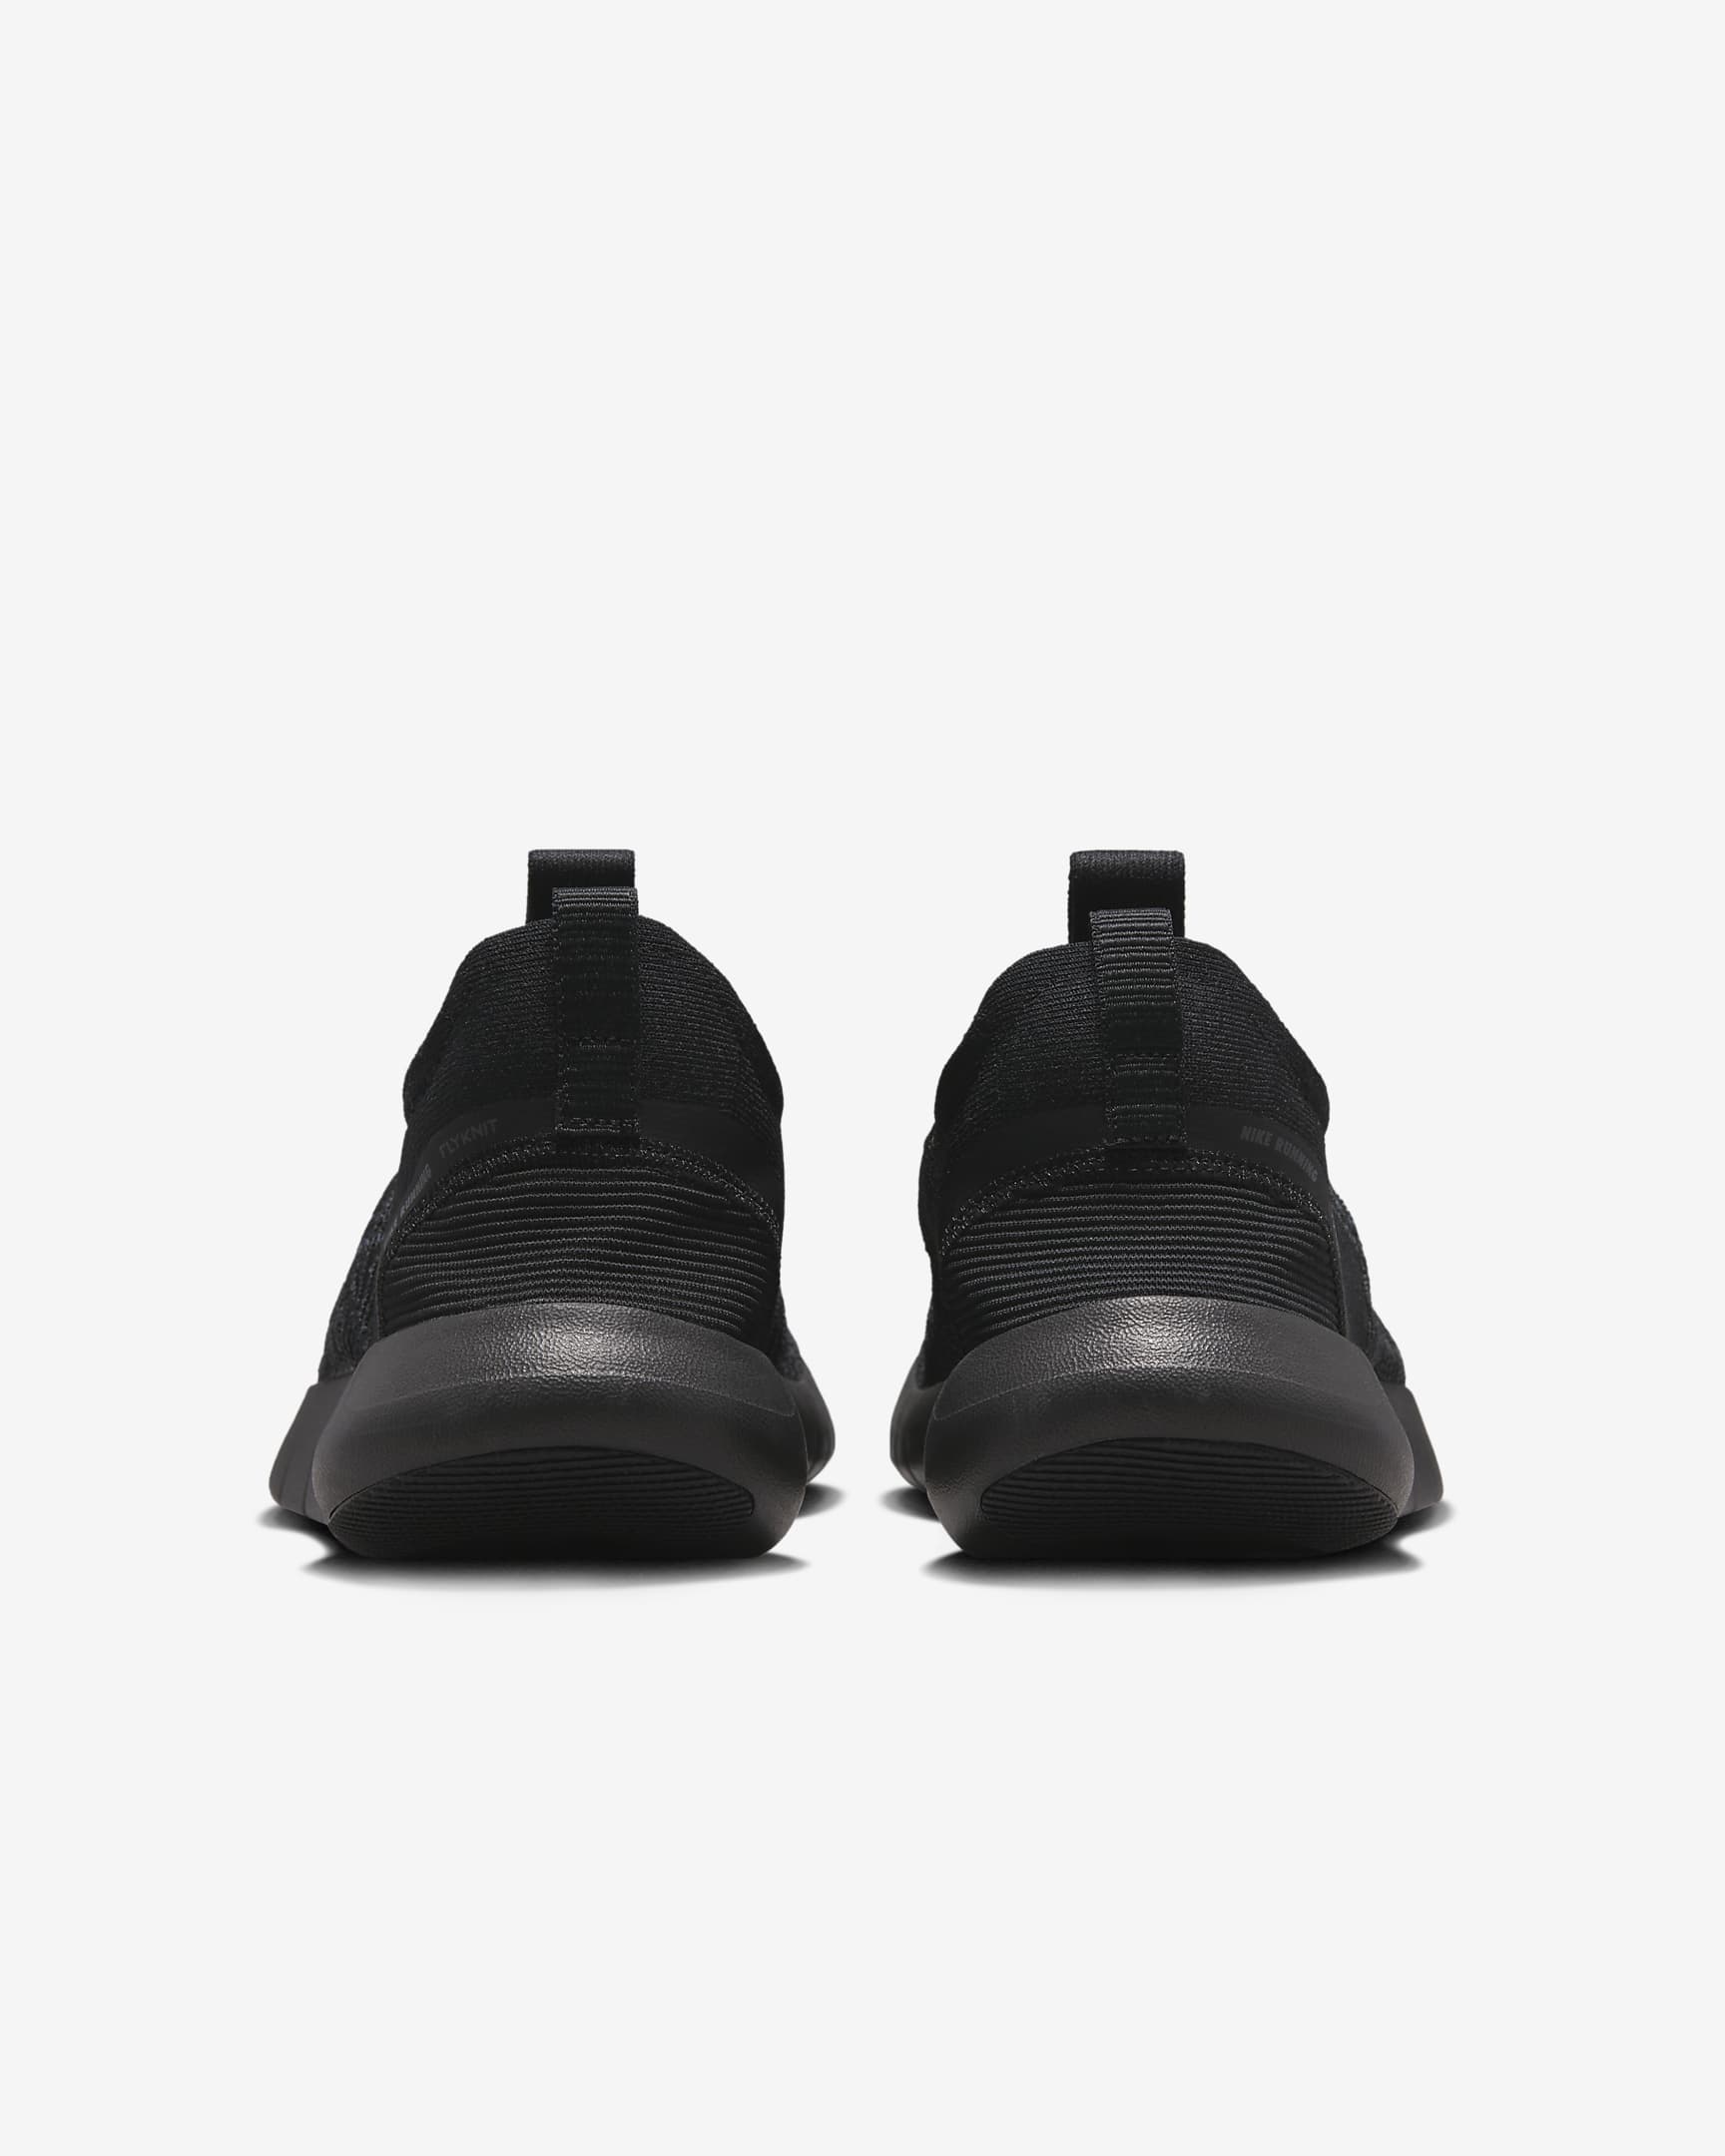 Giày Nike Free RN NN Men Road Running Shoes #Black - Kallos Vietnam